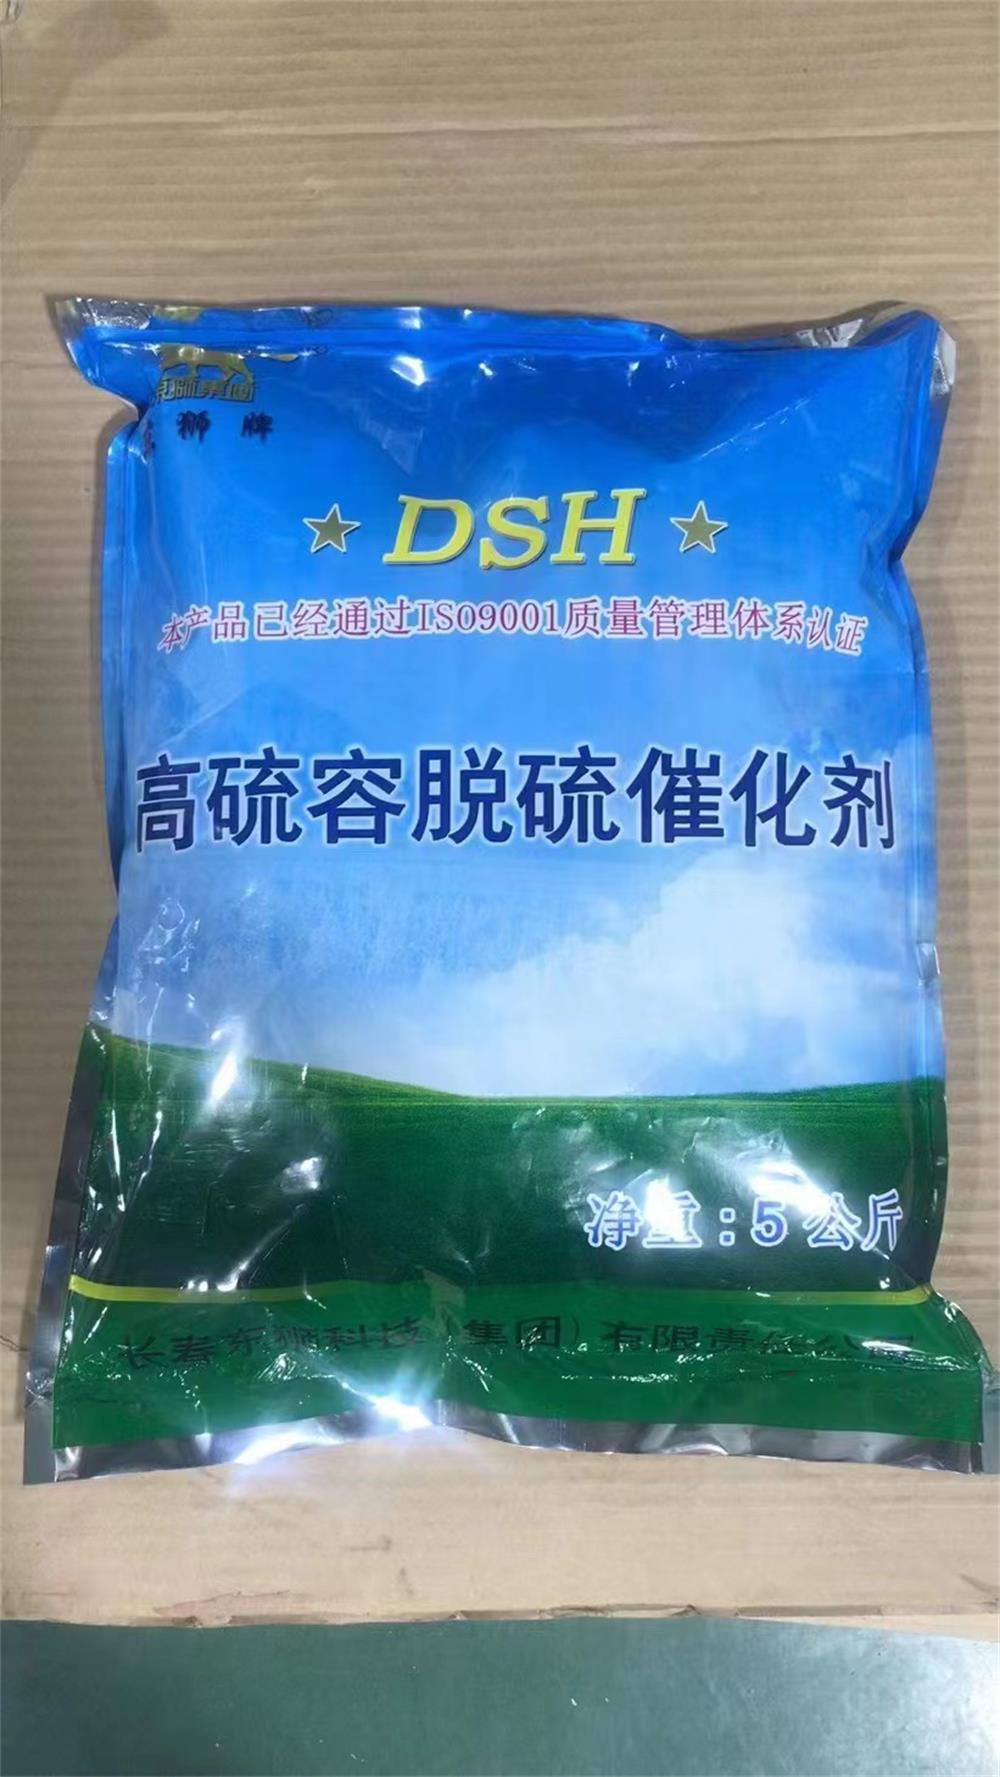 脱硫催化剂厂家 湿法脱硫催化剂 DSH高硫容脱硫催化剂